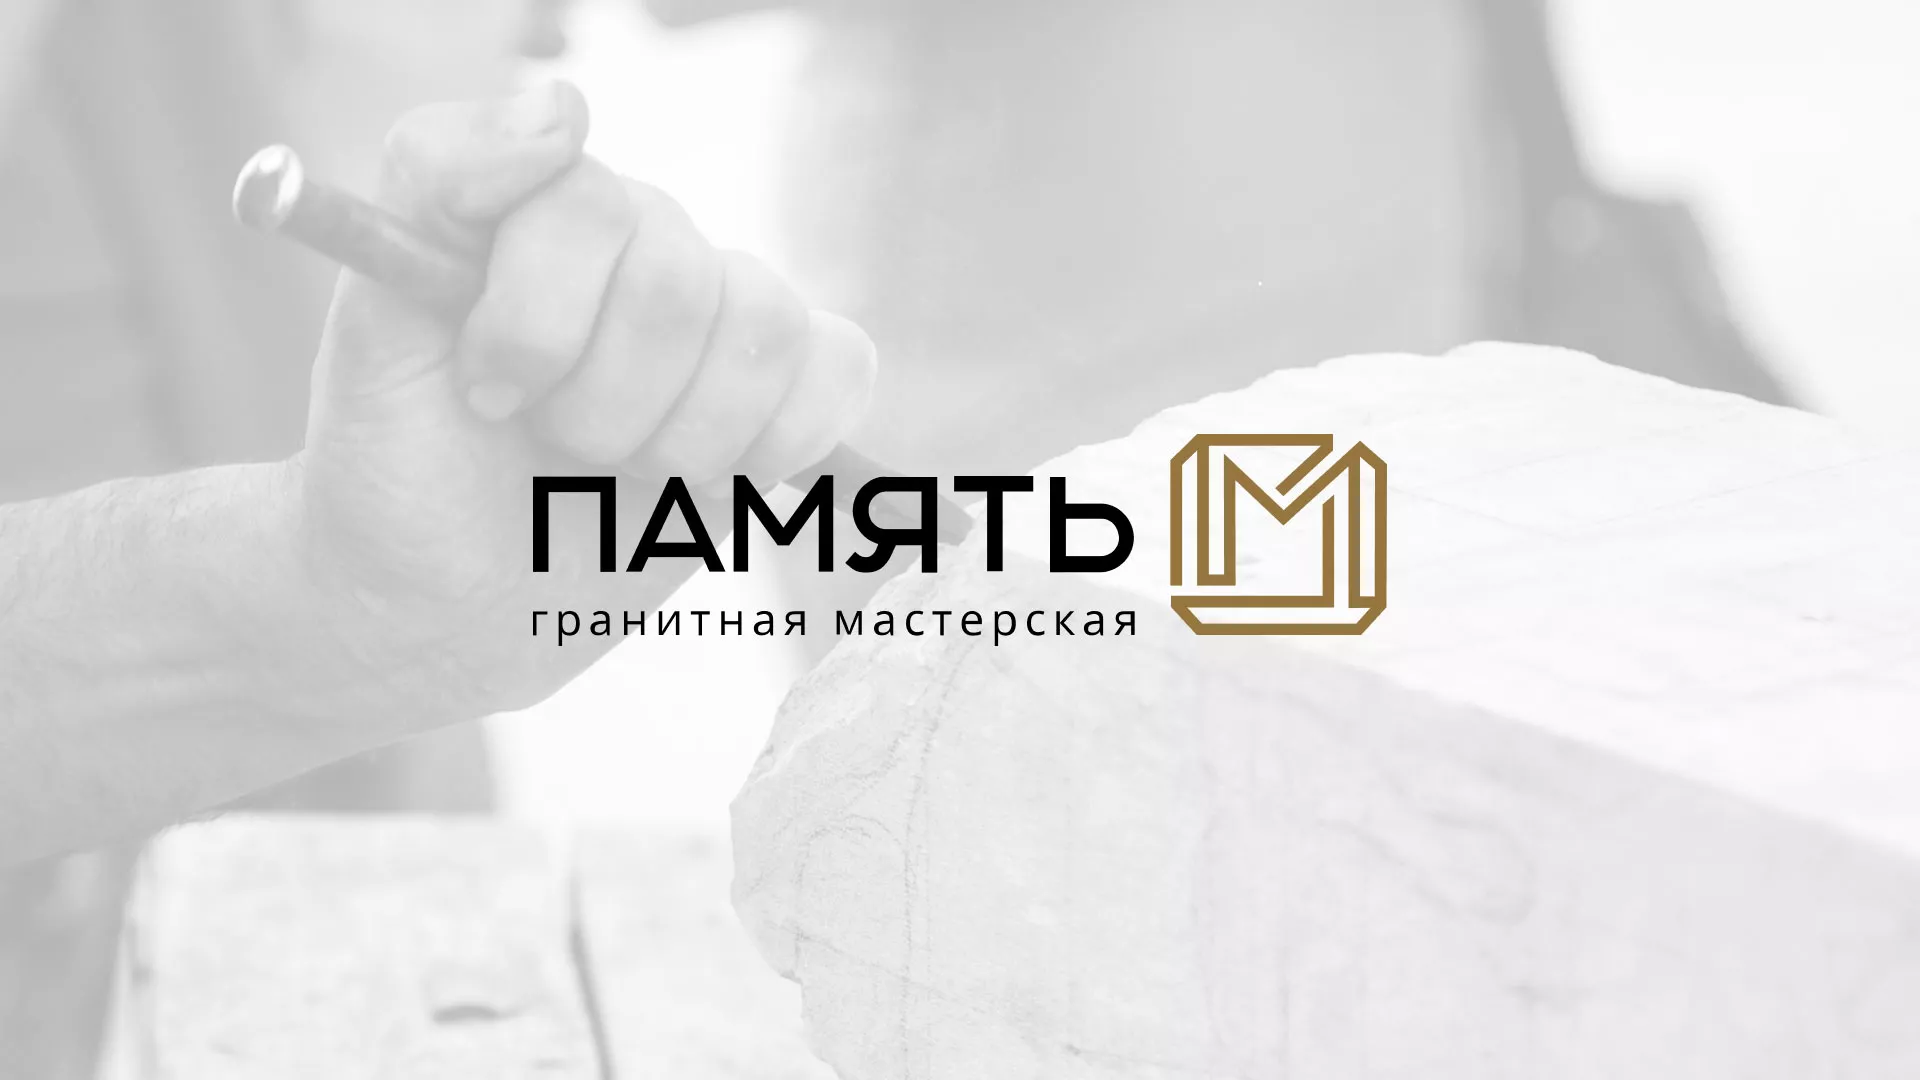 Разработка логотипа и сайта компании «Память-М» в Любиме